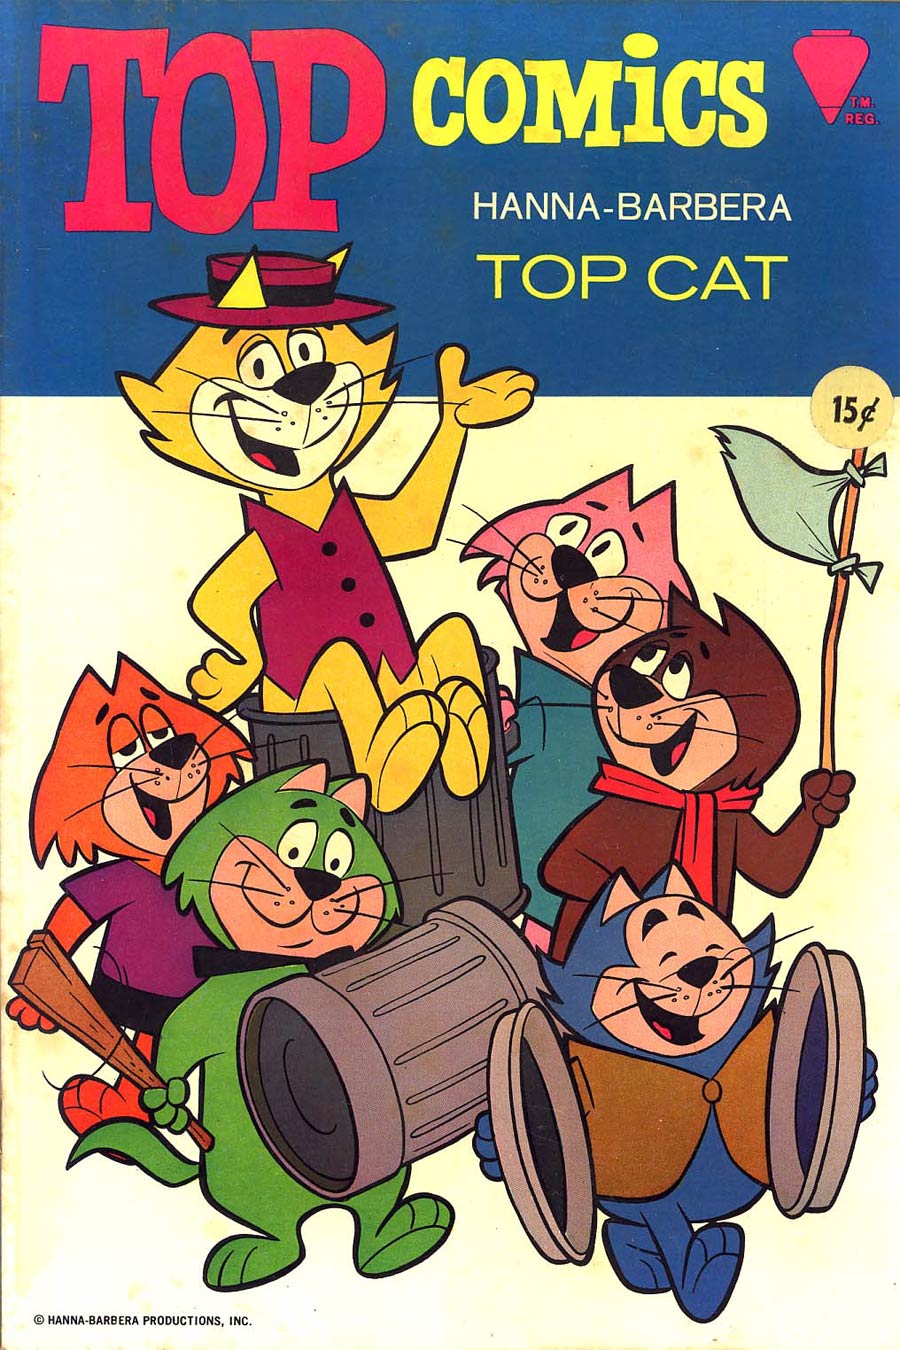 Top Comics #1 Top Cat